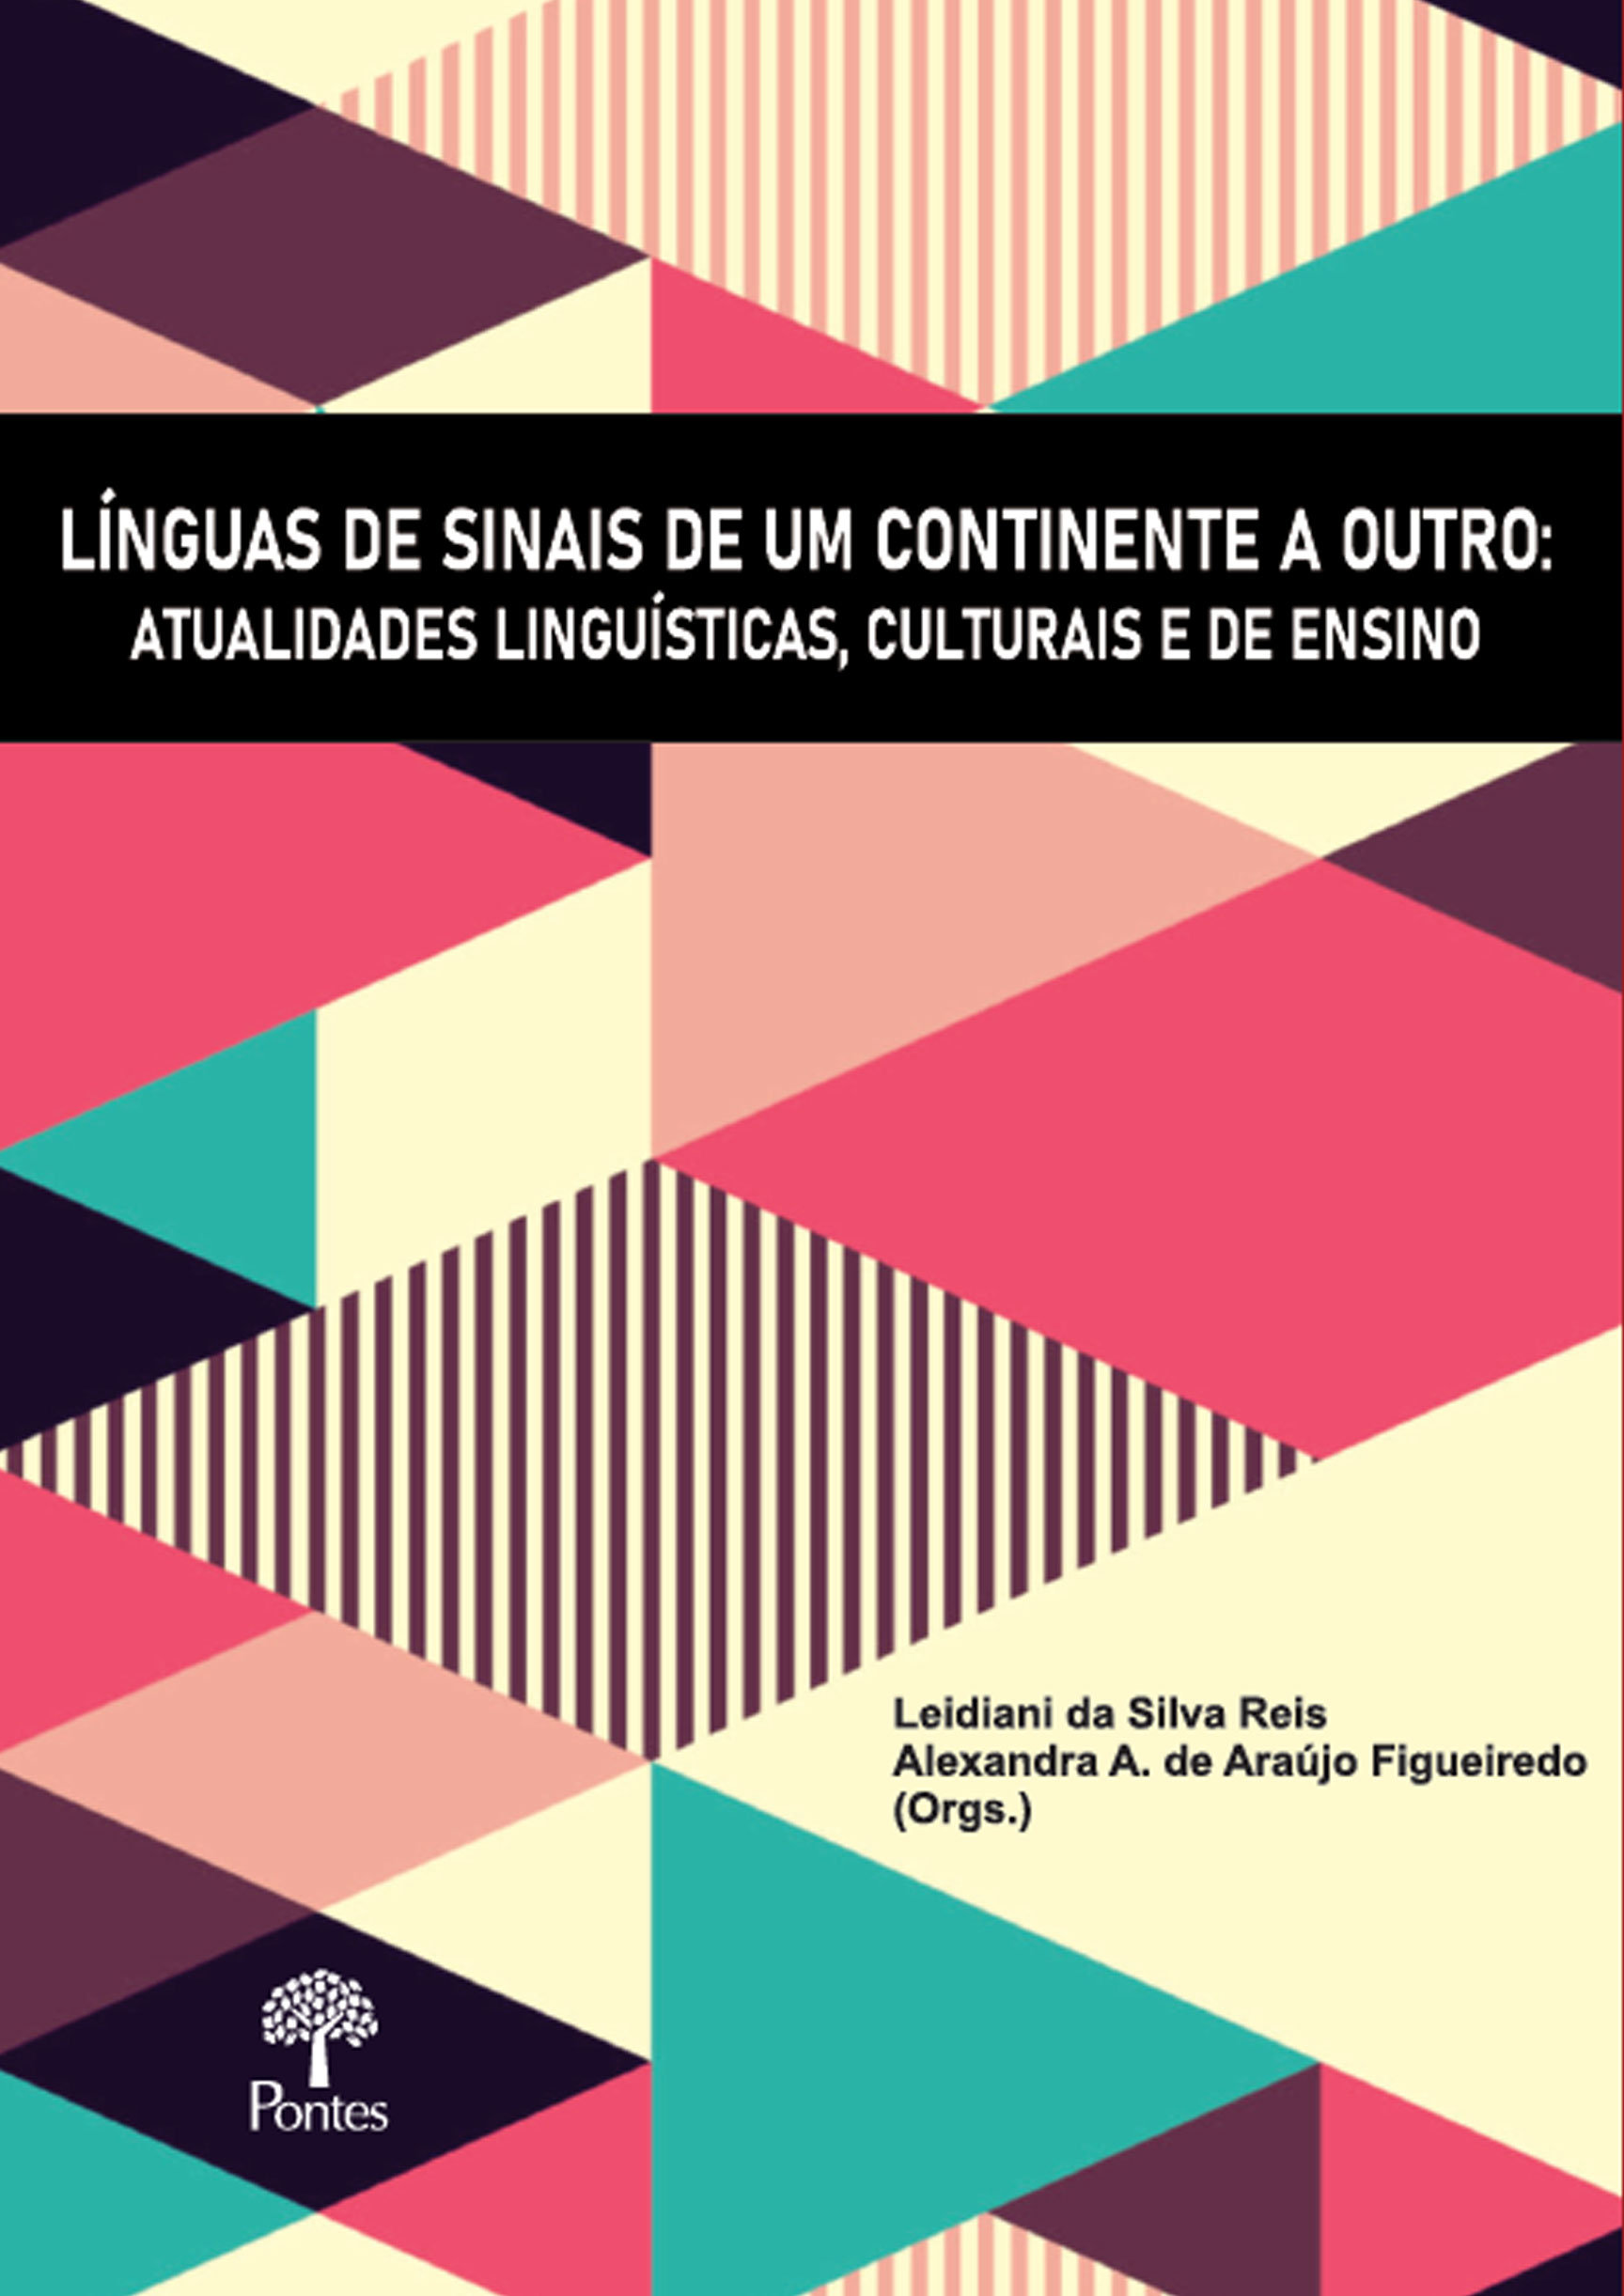 Imagen de portada del libro Línguas de sinais de um continente a outro